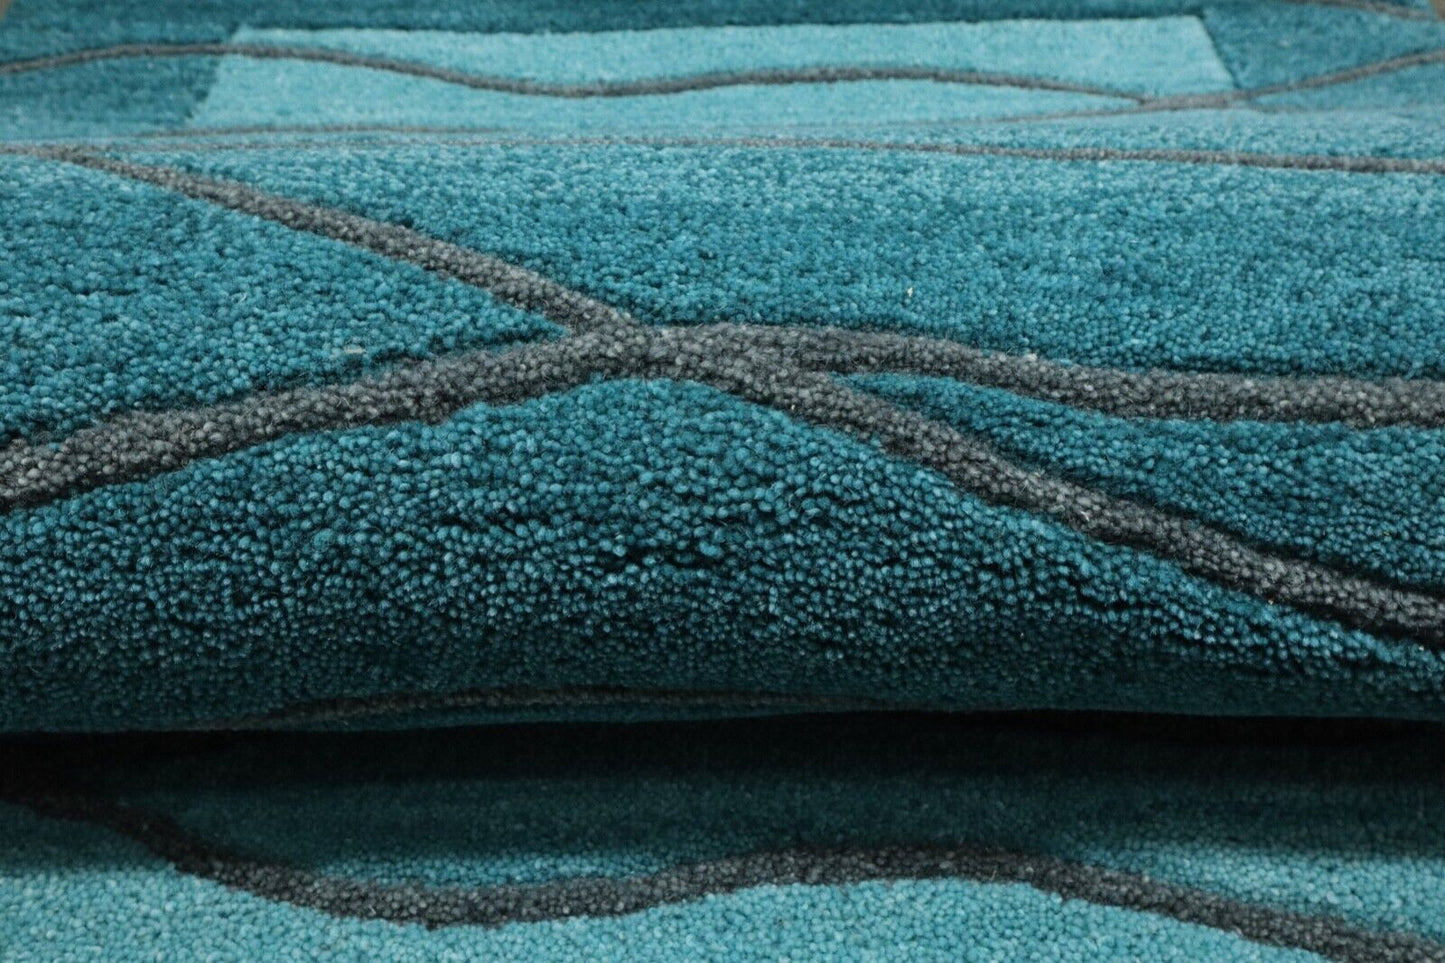 Gabbeh Teppich 100% Wolle 70X140 cm Handarbeit Hell Blau Handgetuftet T1020